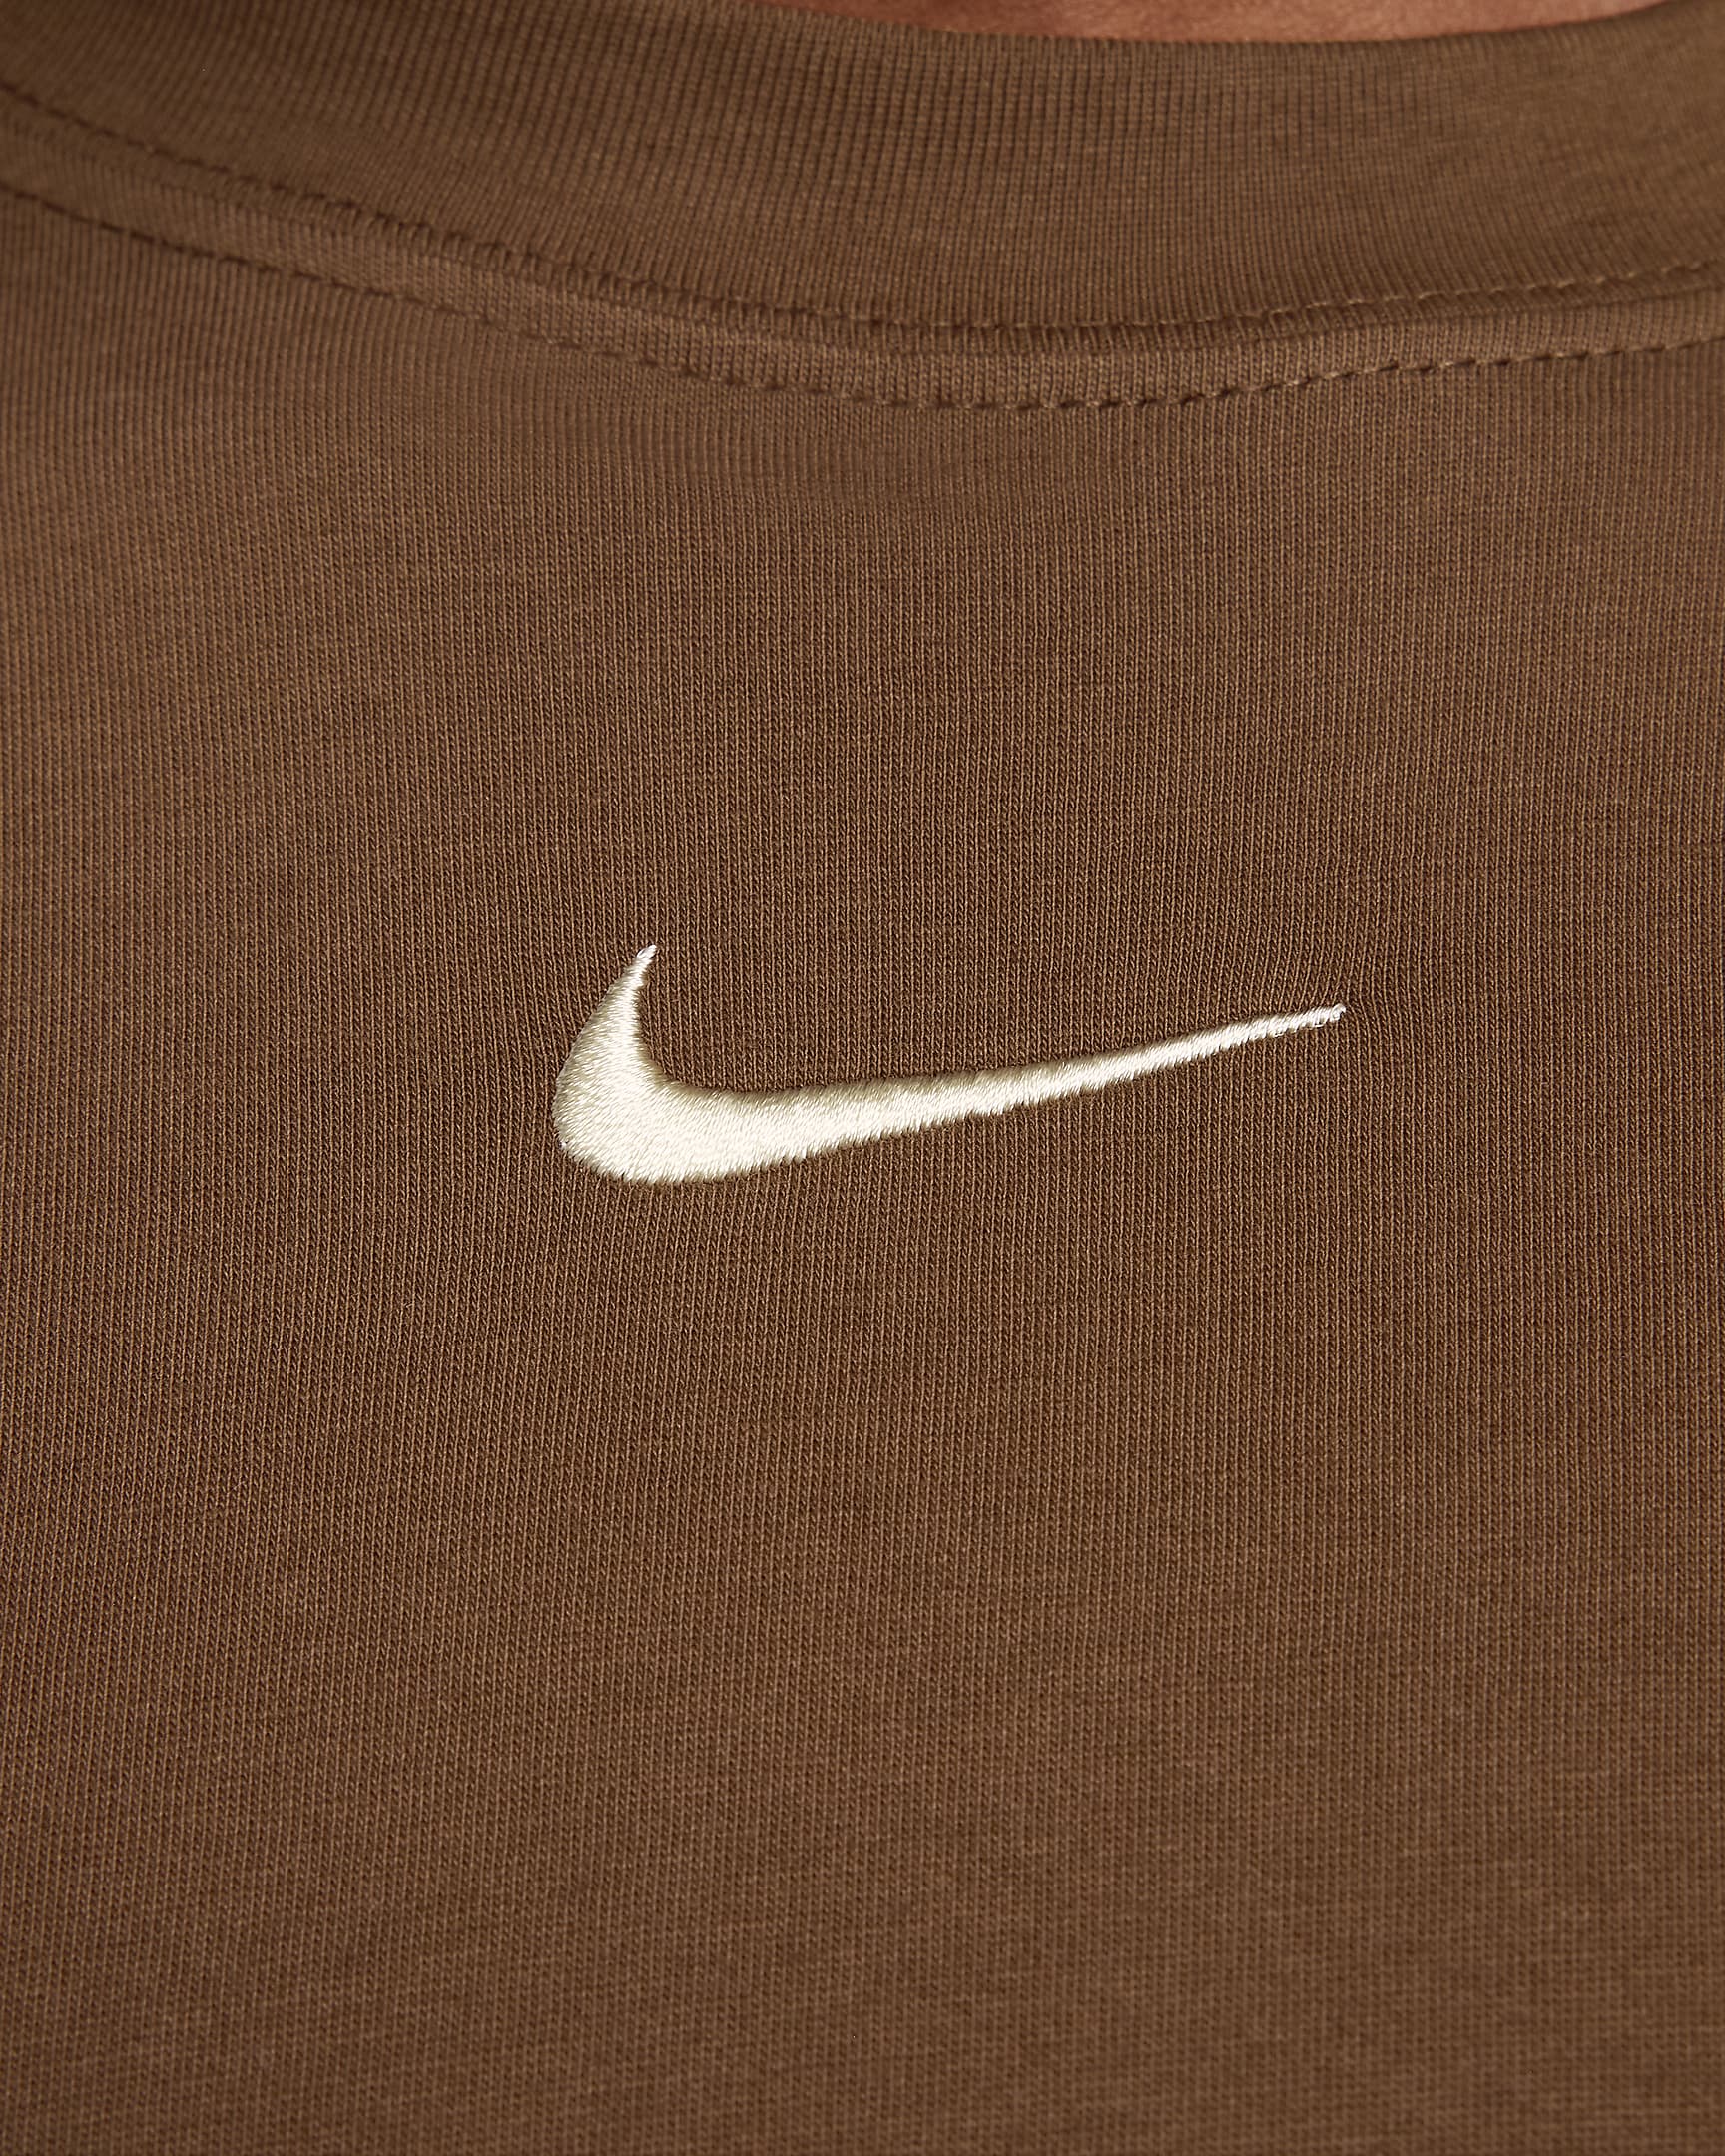 Nike Sportswear Women's Long-Sleeve T-Shirt. Nike DK